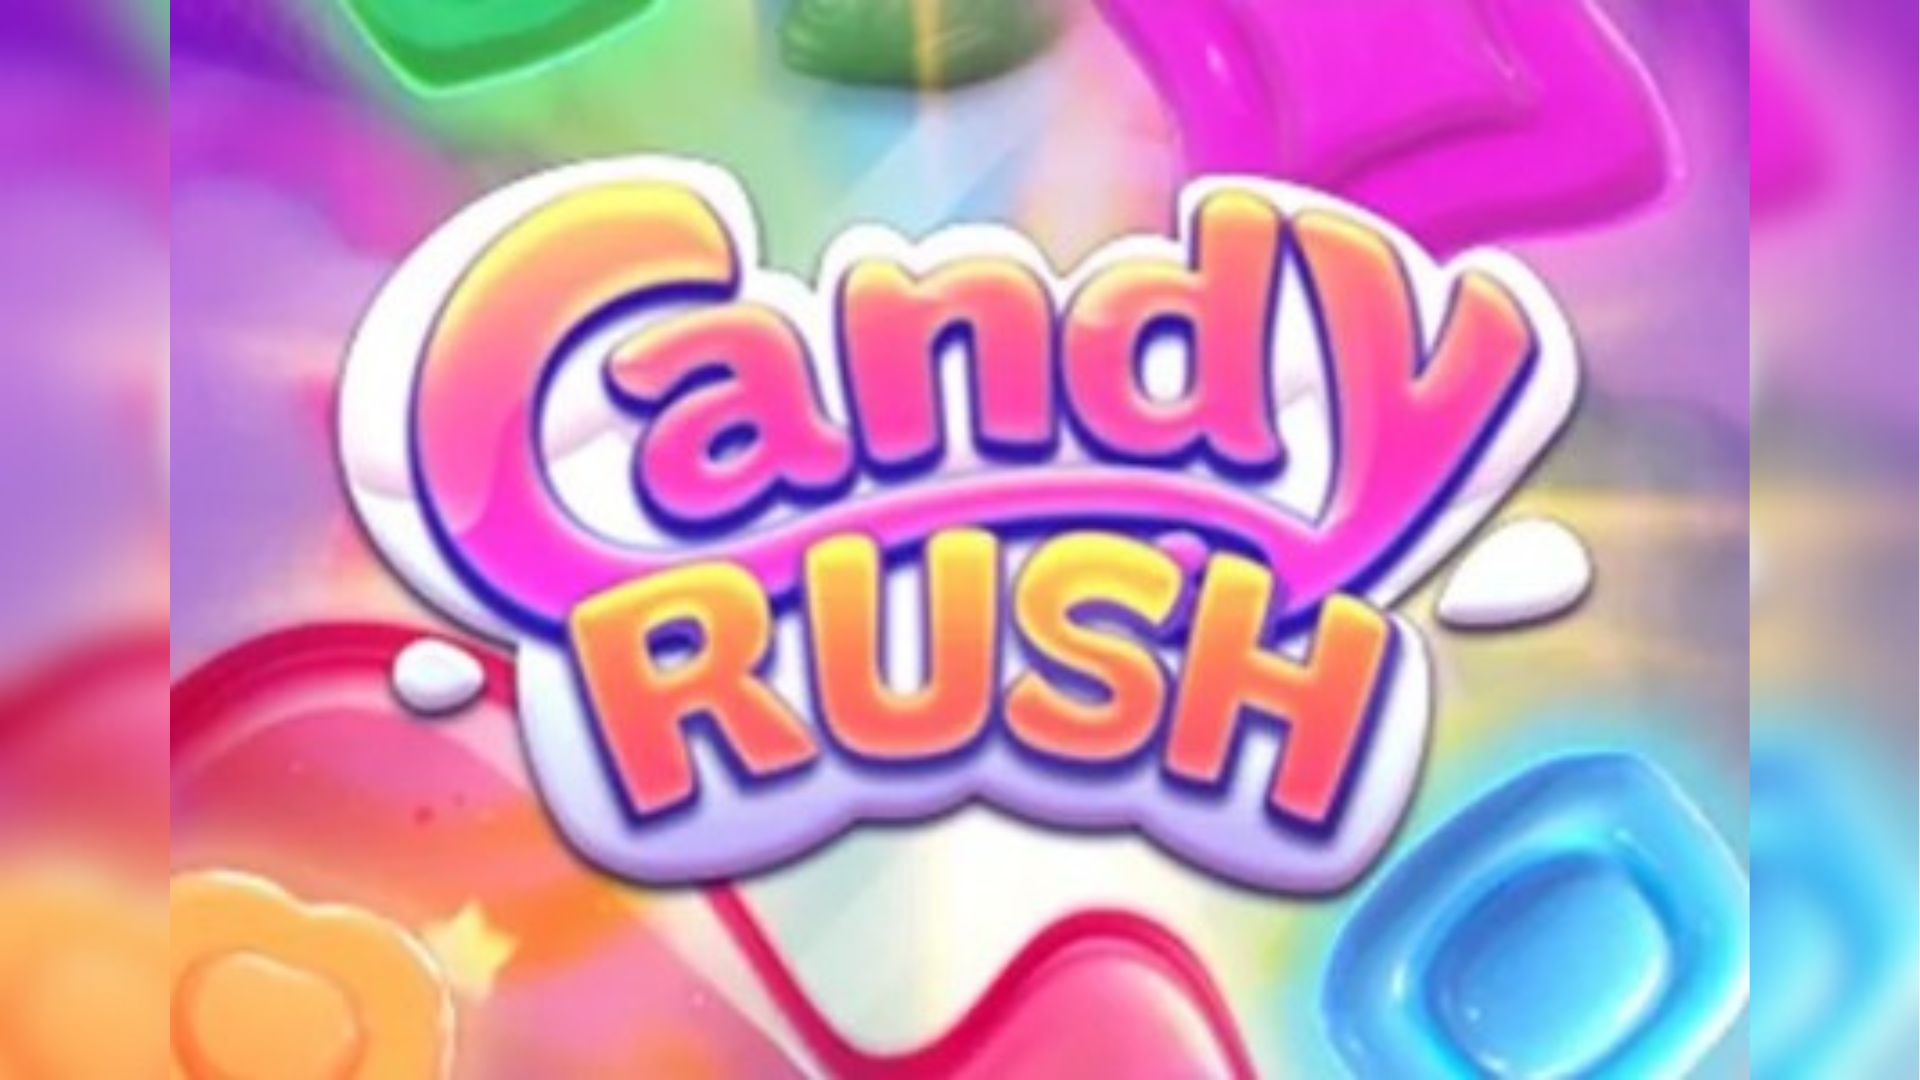 candy rush